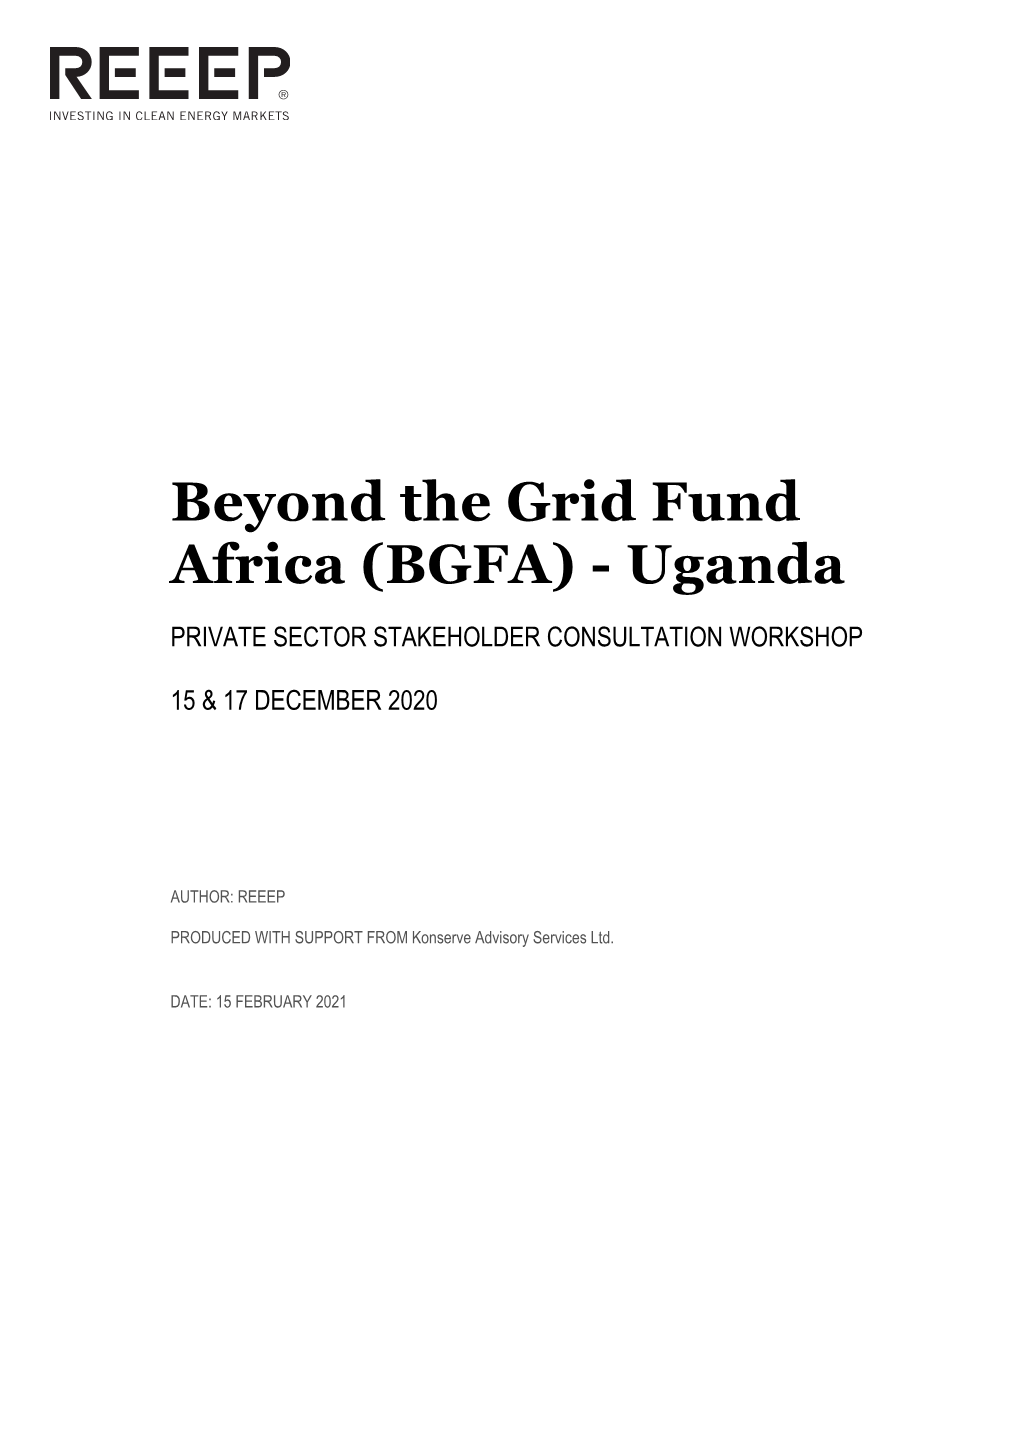 Beyond the Grid Fund Africa (BGFA) - Uganda